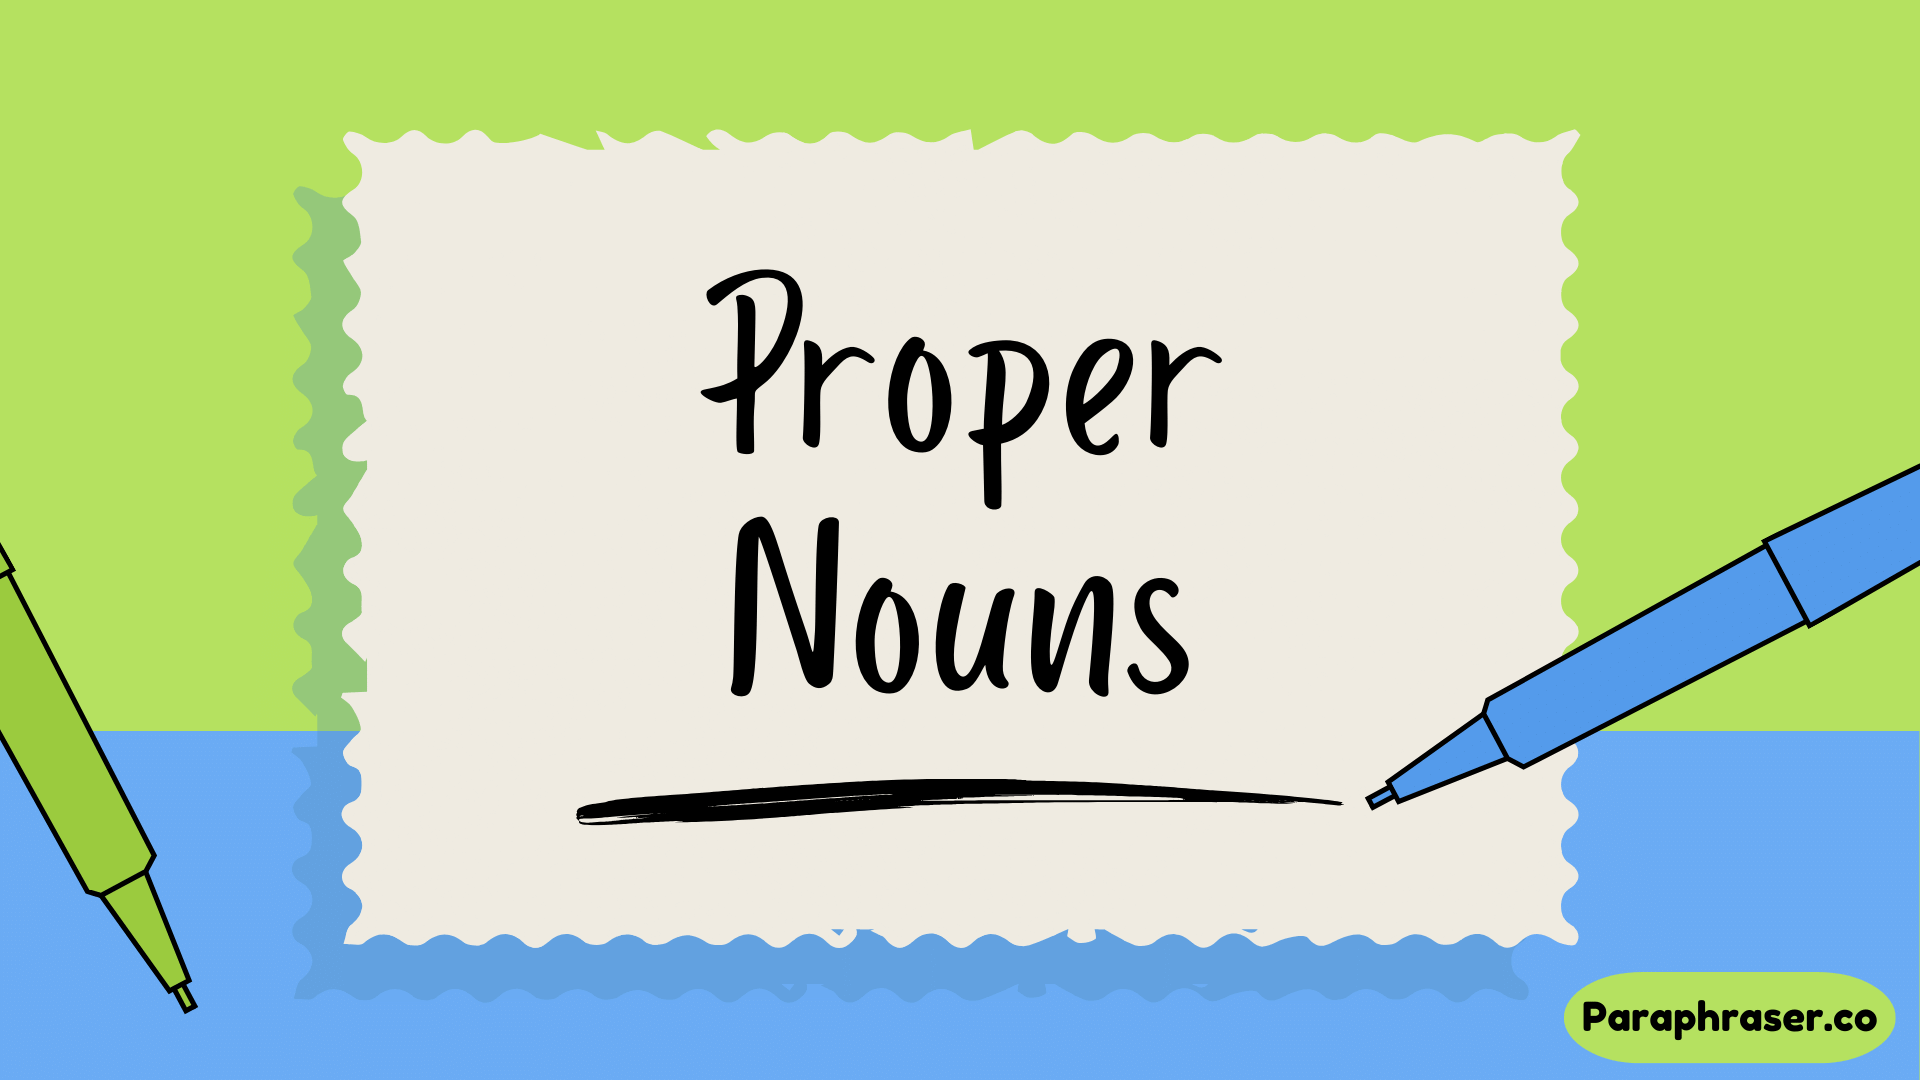 What is Proper Noun